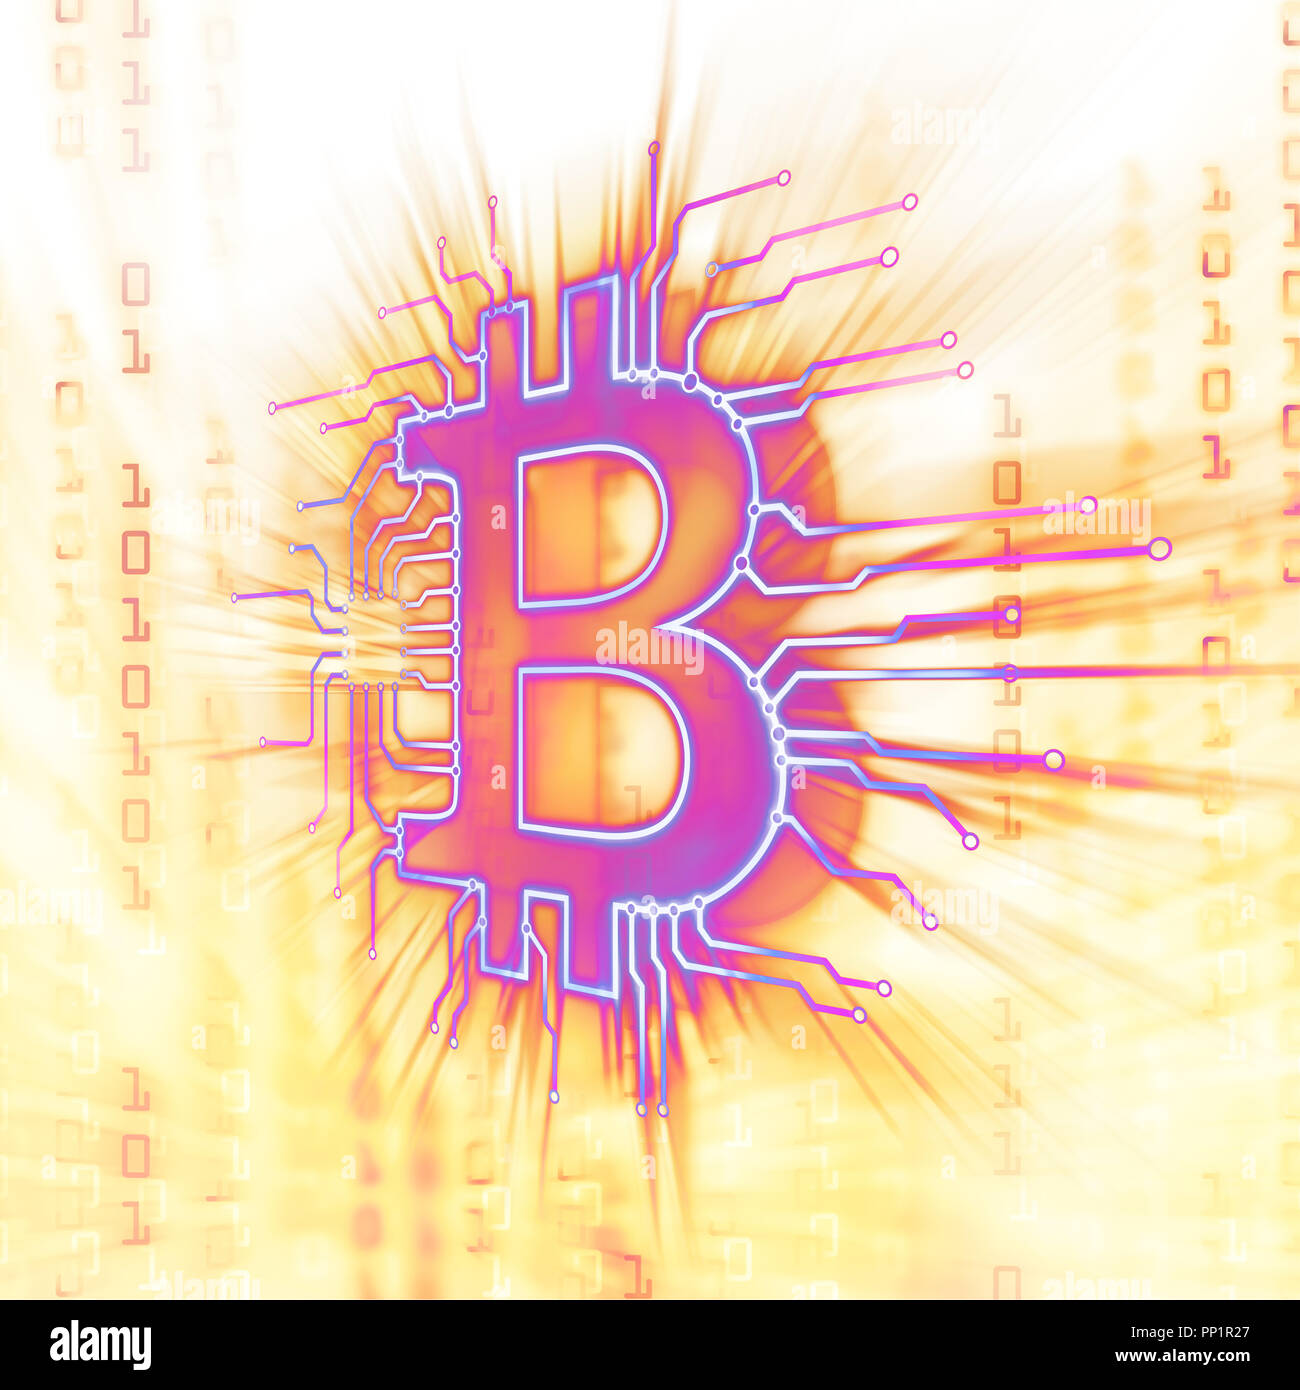 Bitcoin blockchain ₿ cryptocurrency en red, símbolo de moneda digital, Ilustración conceptual en brillantes colores amarillo morado brillante Foto de stock